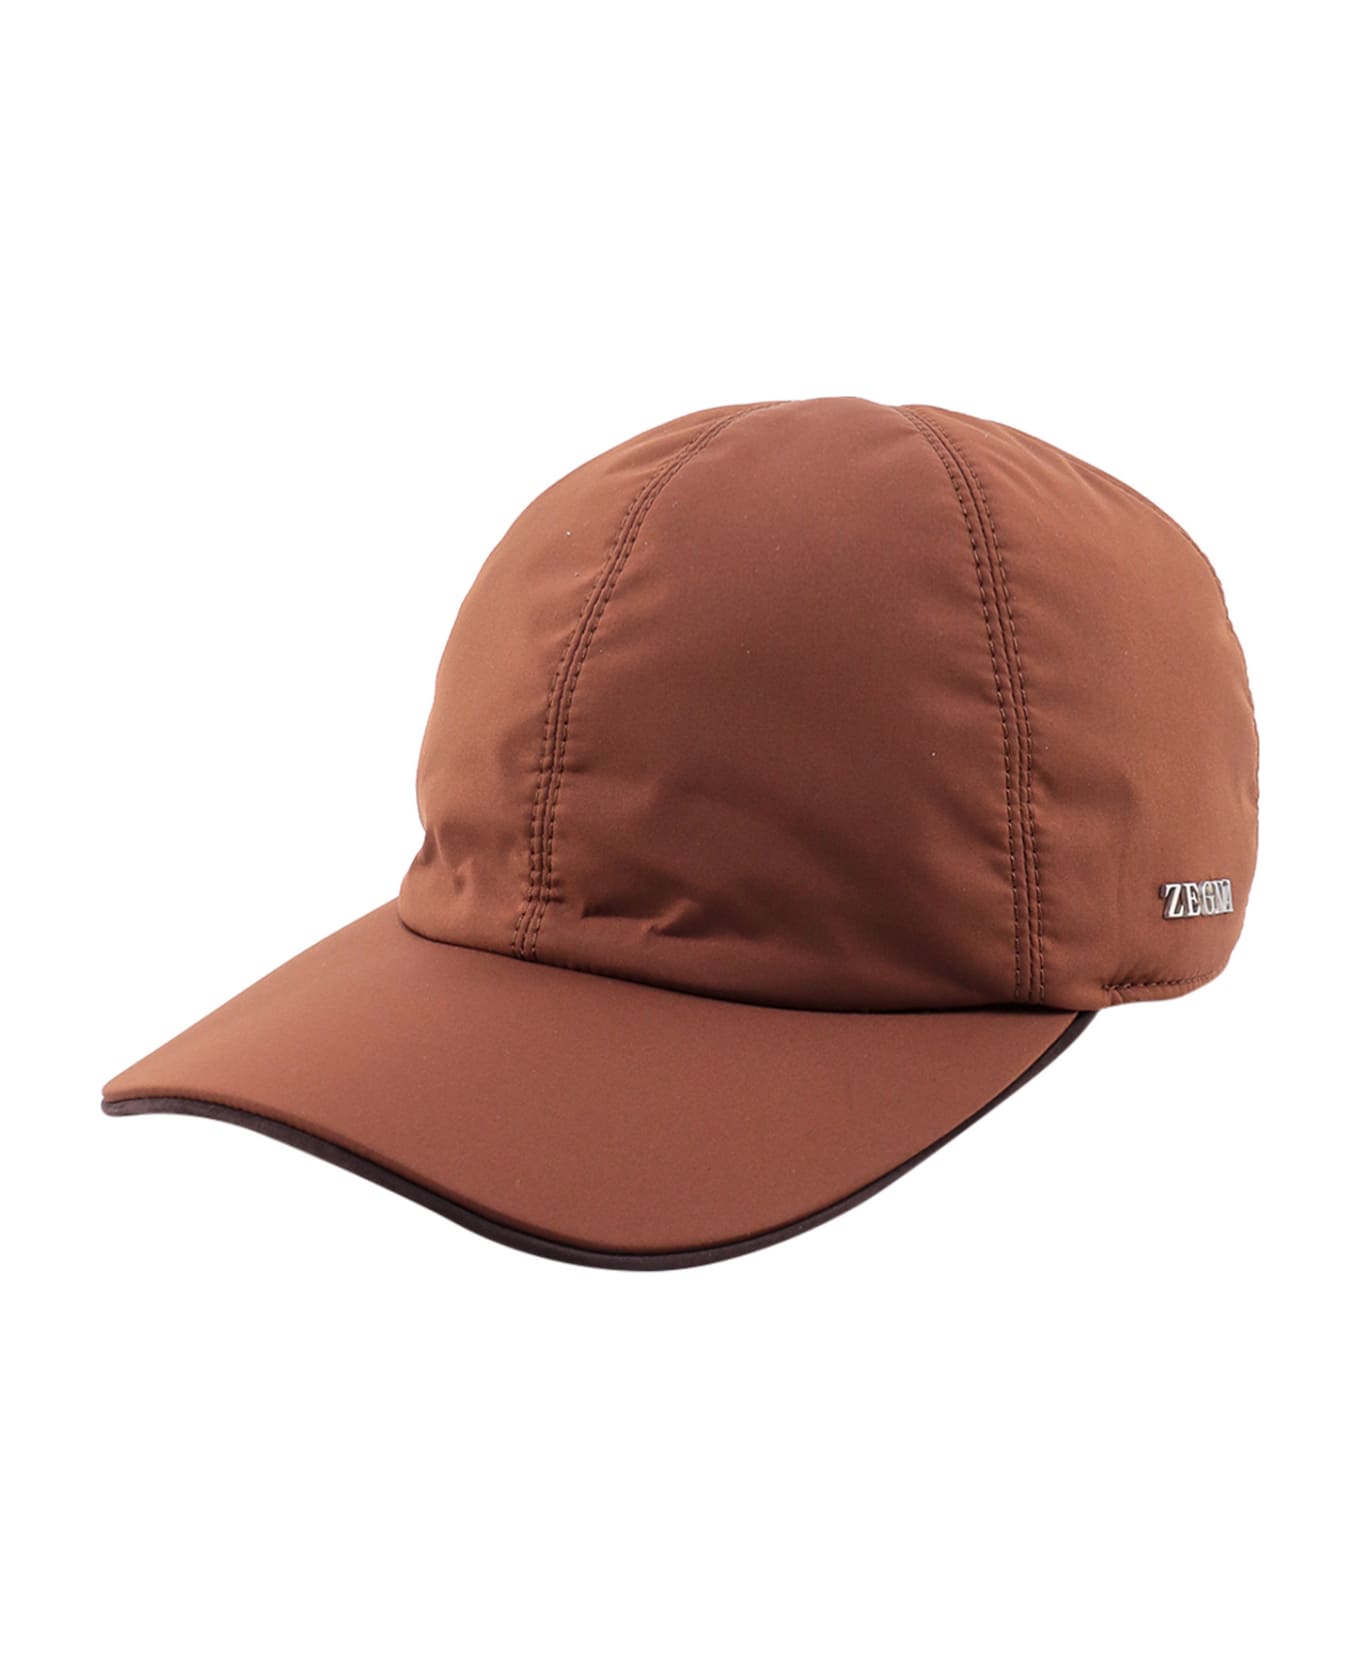 Zegna Hat - BROWN 帽子